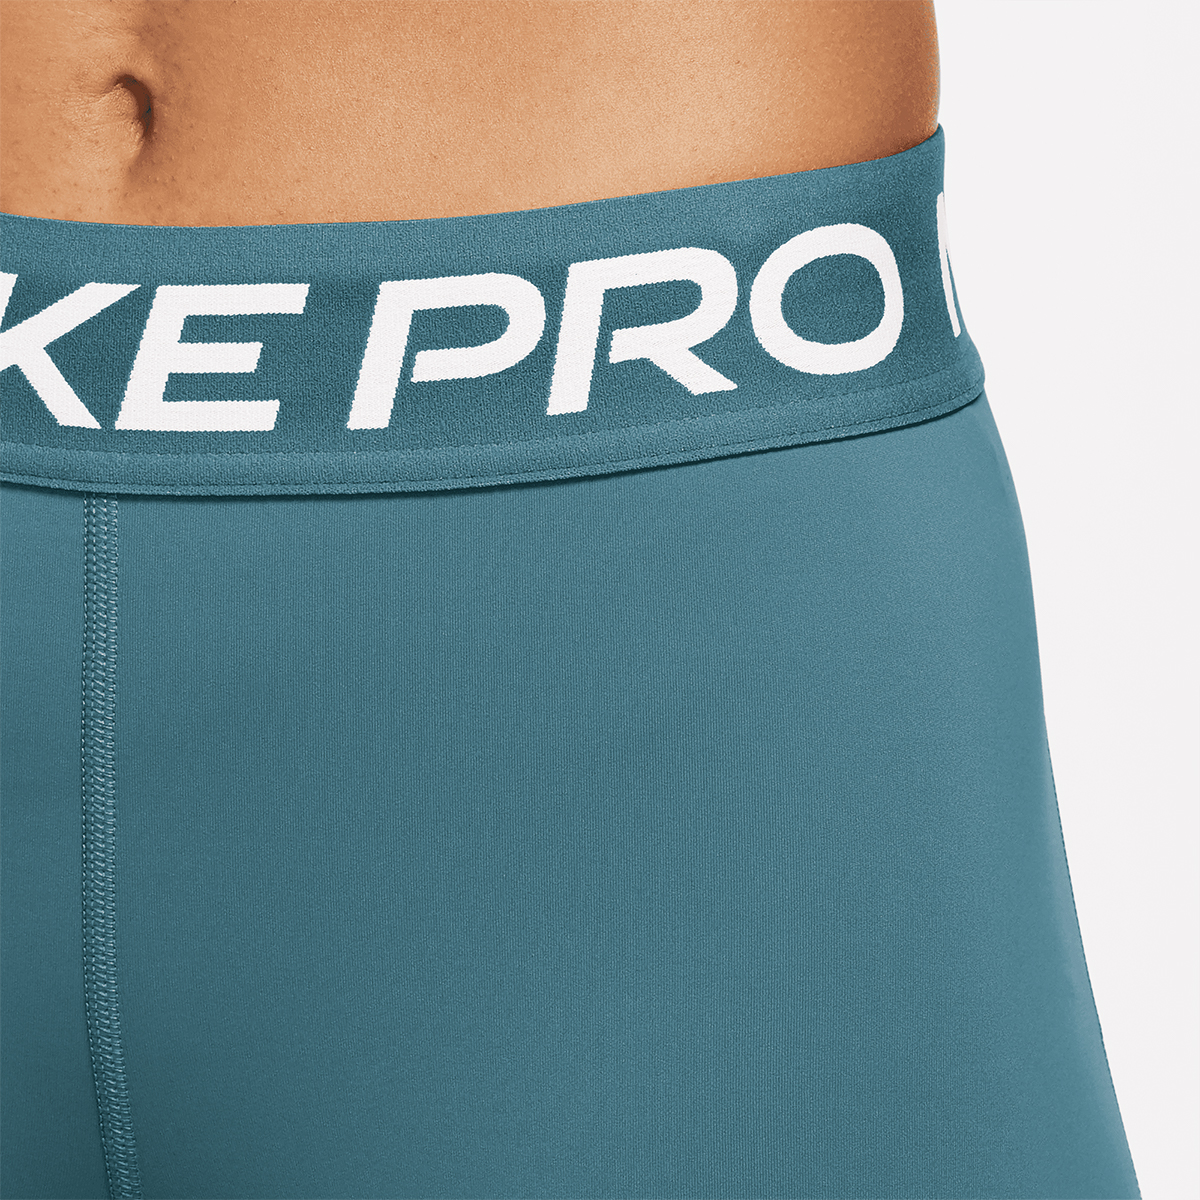 Nike Helanke Pro 